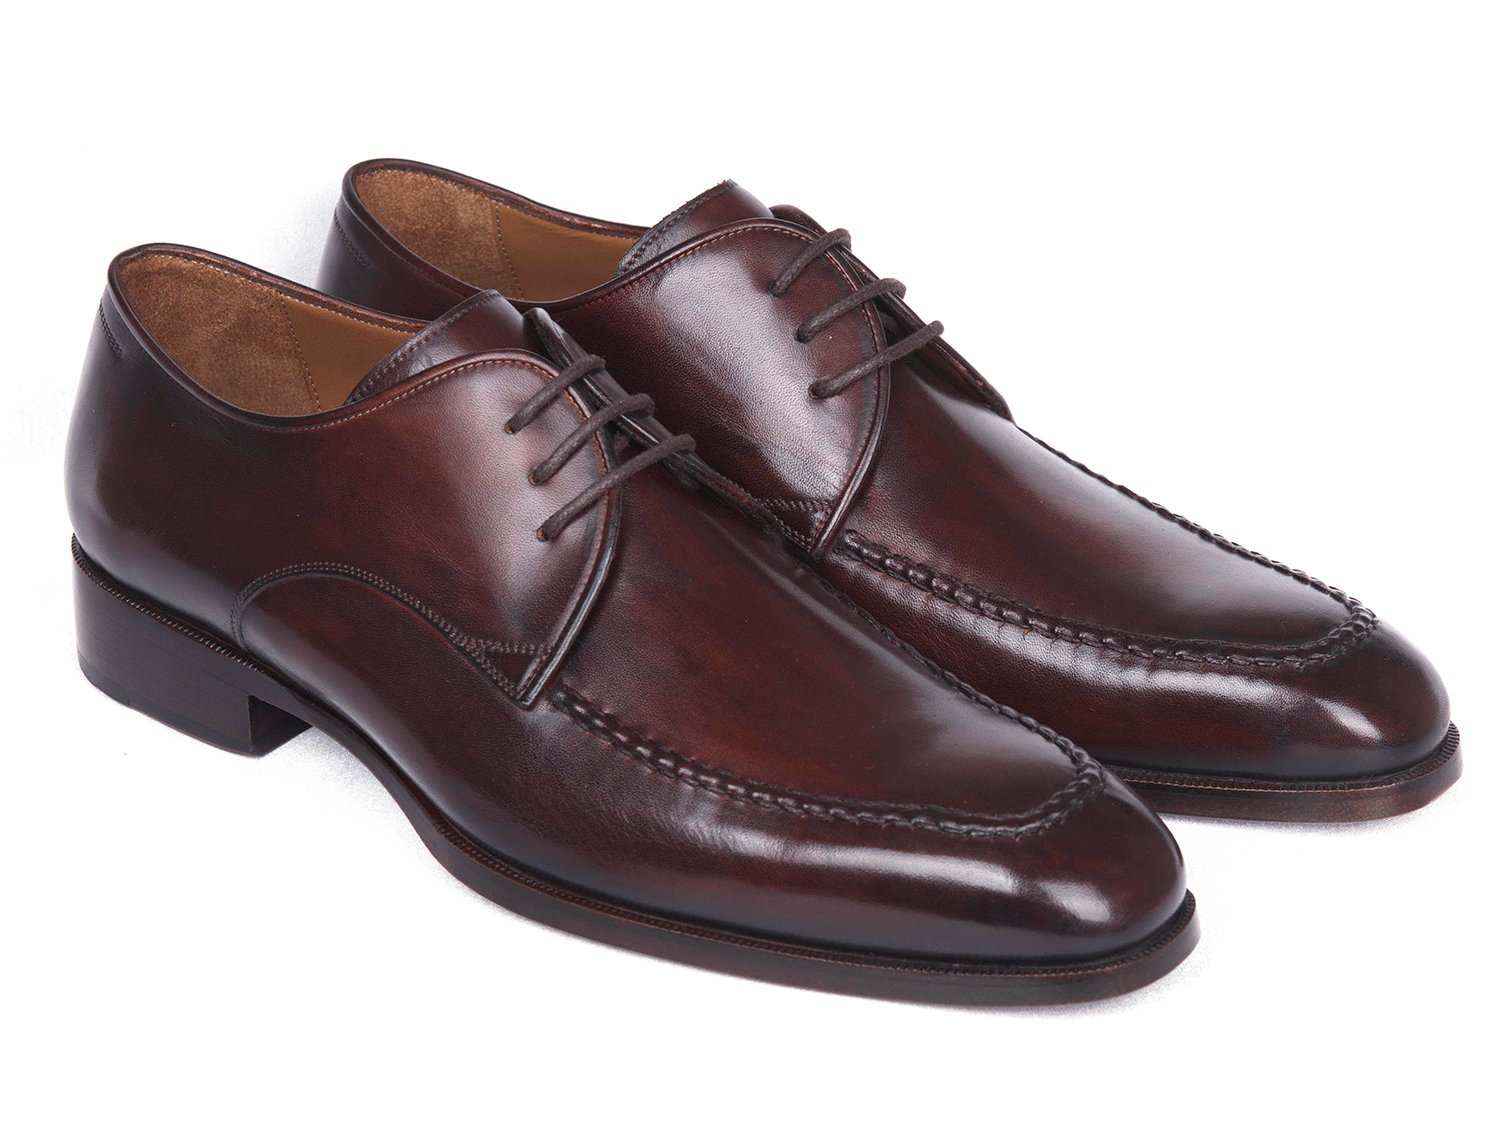 Paul Parkman "33BRD92" Brown / Burgundy Leather Apron Derby Shoes.